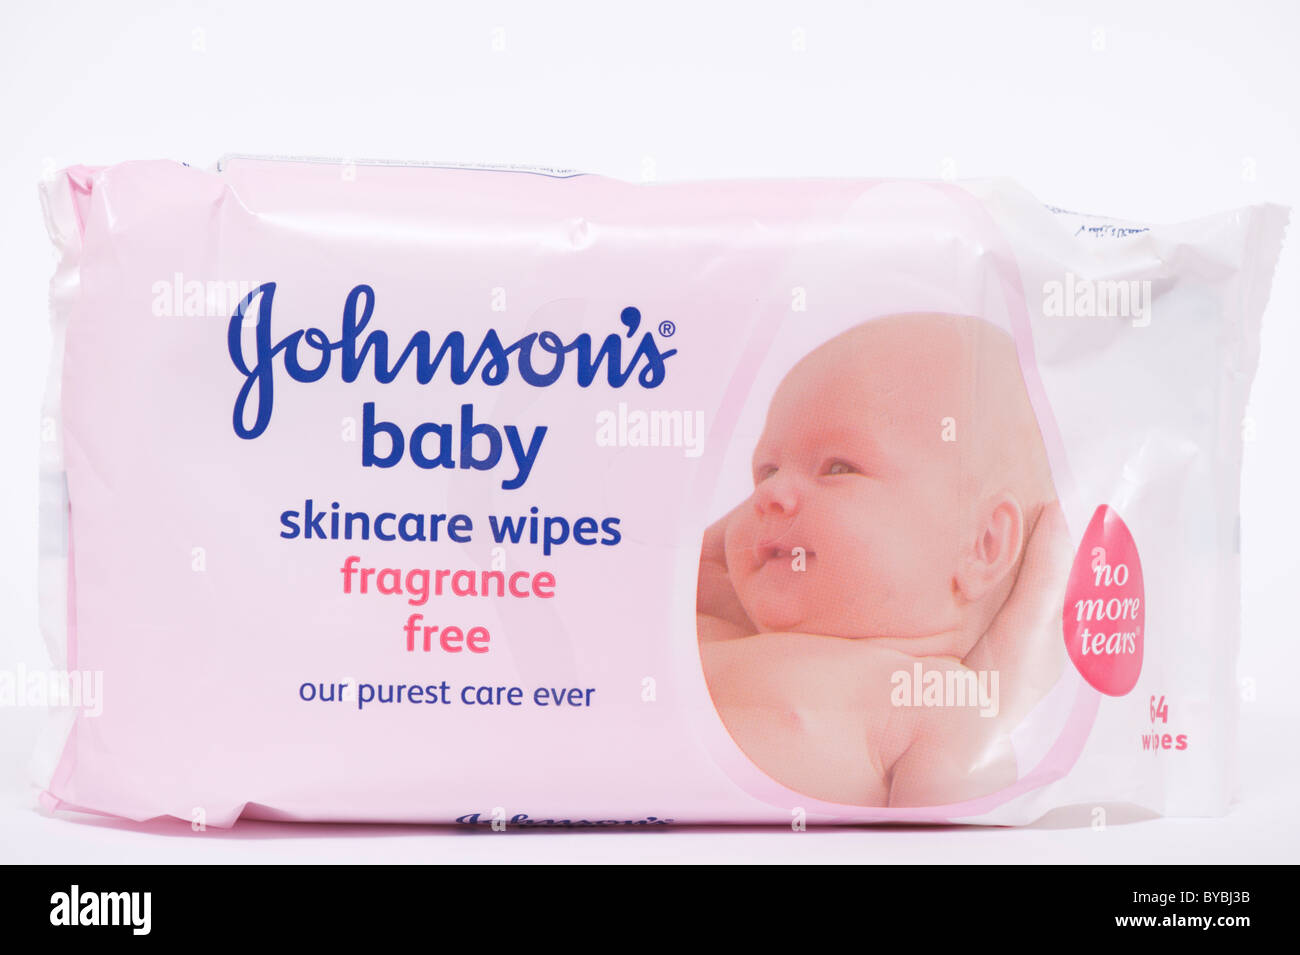 Un paquet de lingettes soin bébé Johnsons par Johnson et Johnson sur un  fond blanc Photo Stock - Alamy